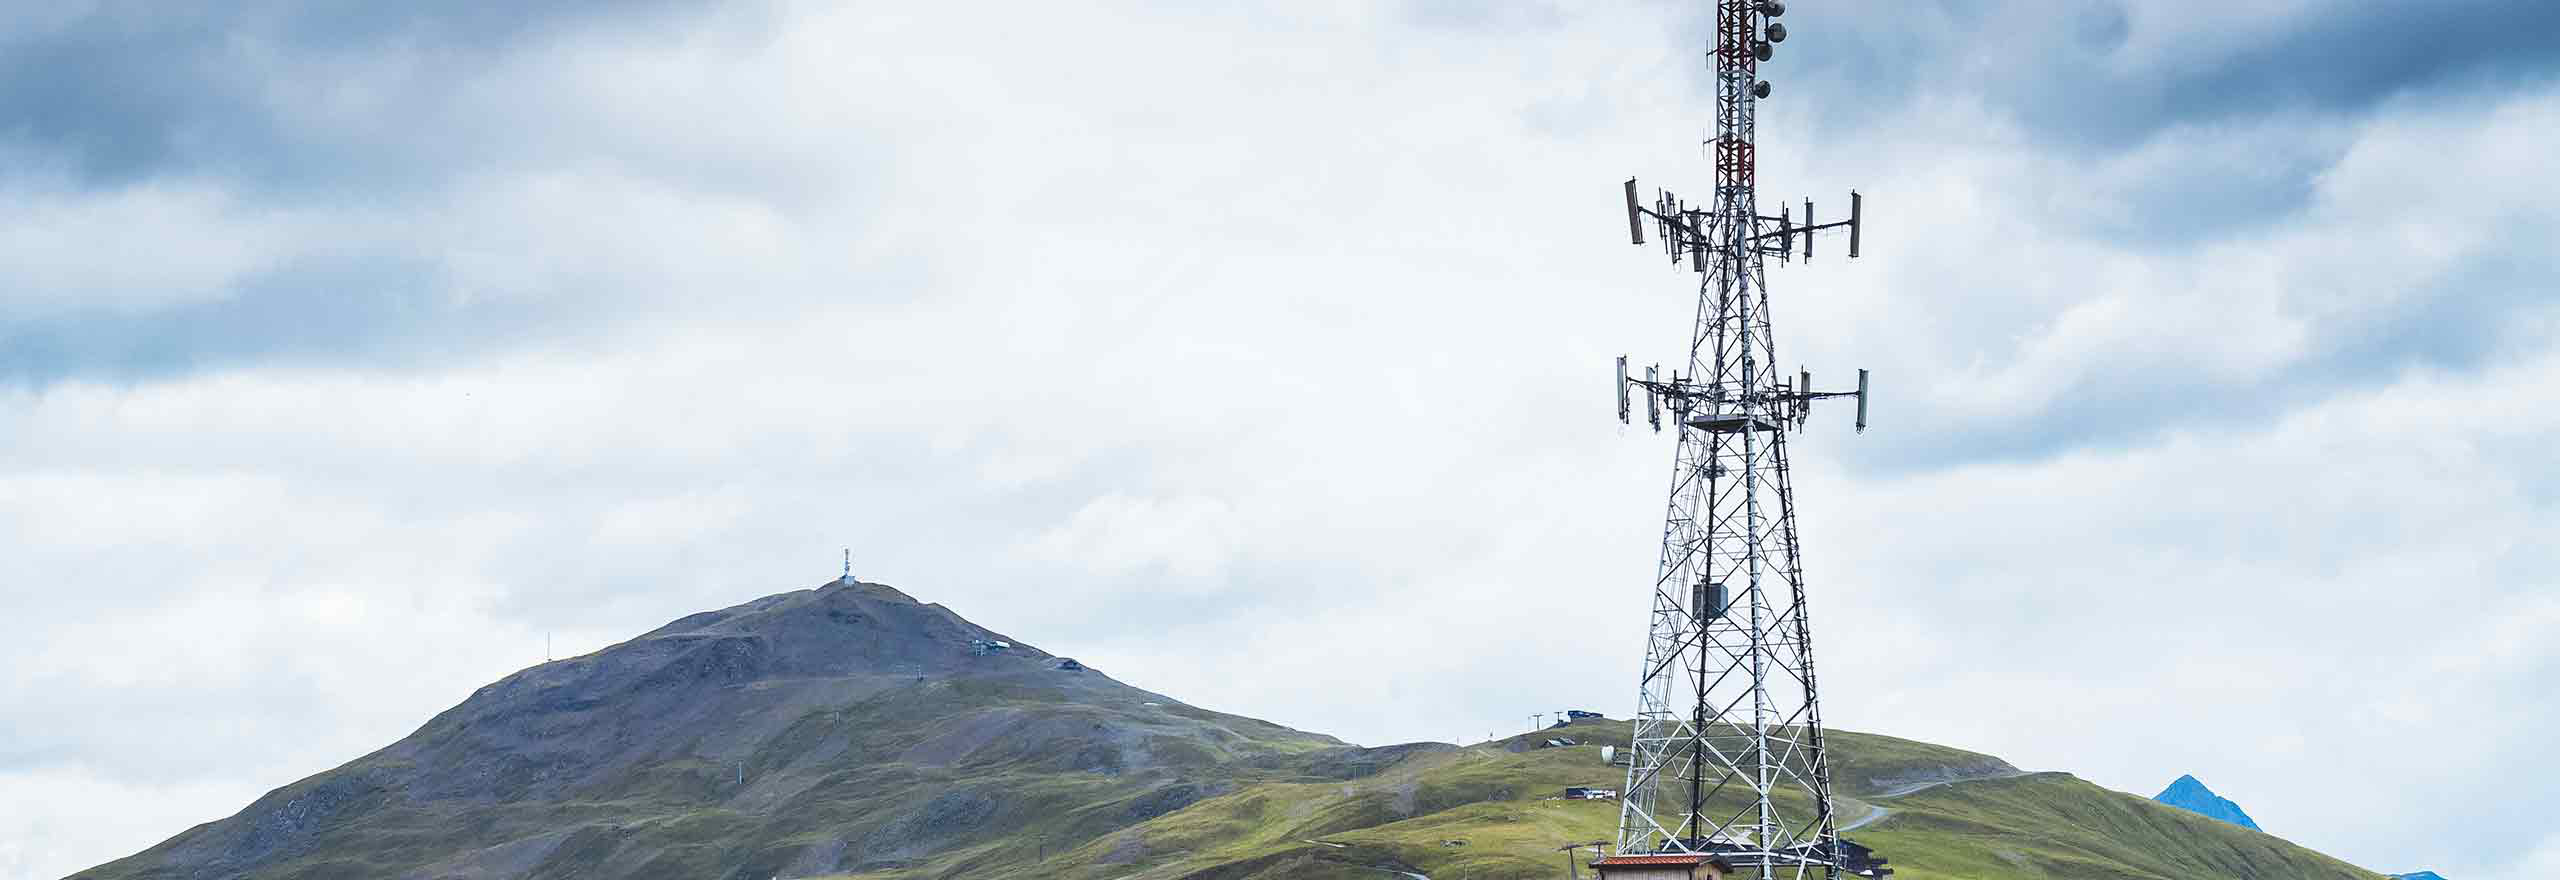 Torre de telecomunicações usando soluções SIG